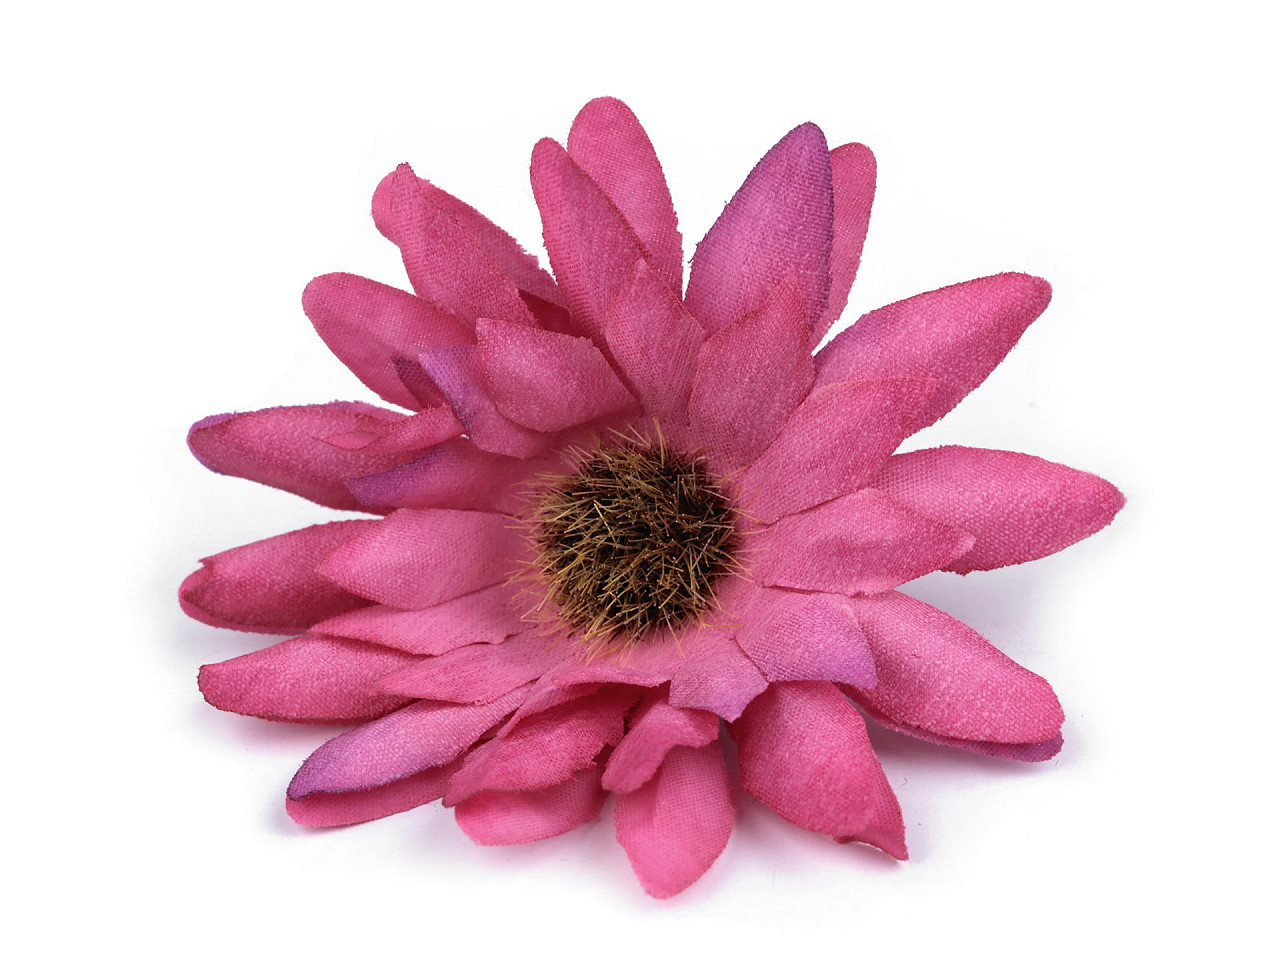 Umělý květ gerbera Ø6,5 cm, barva 3 fialovorůžová